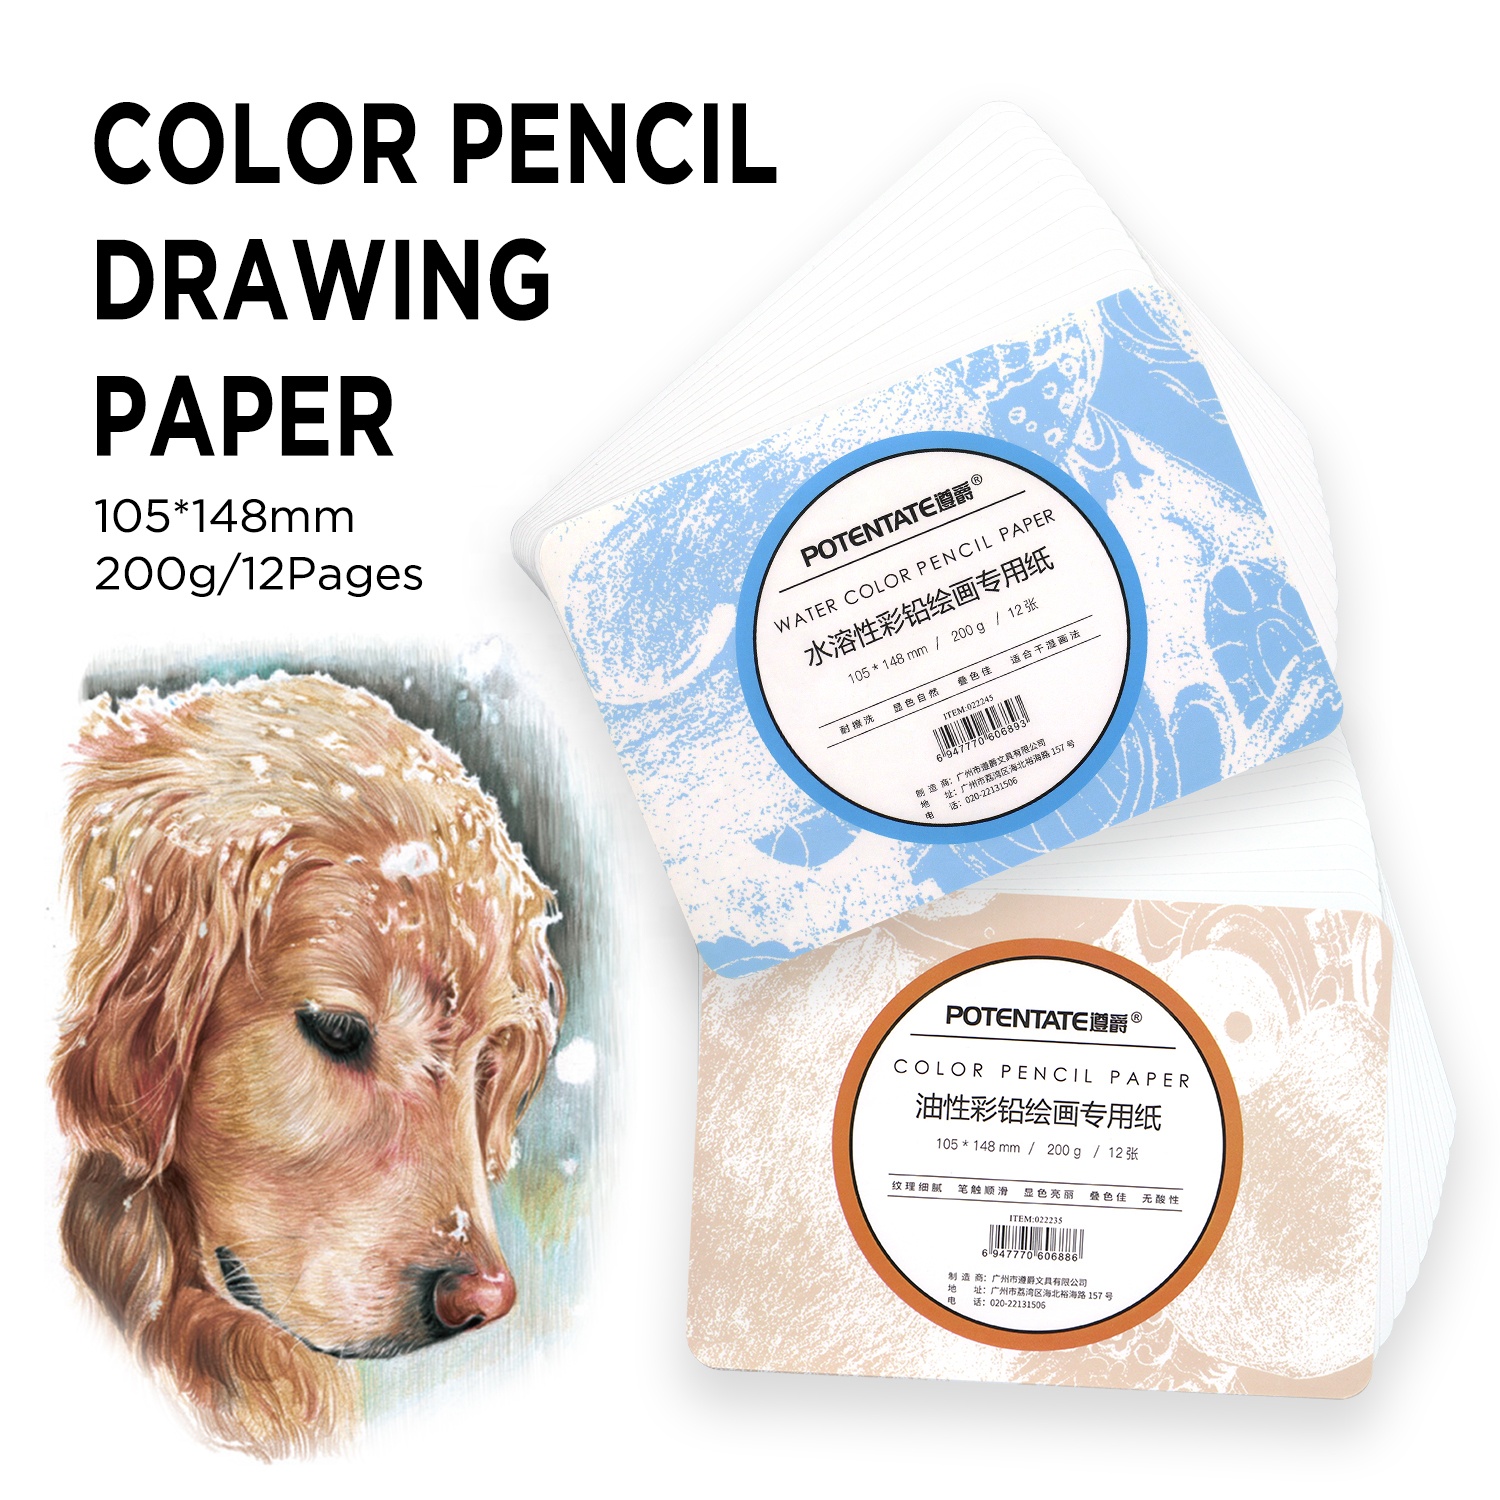 Yağlı renkli kalem ve su rengi Pencil200gsm kağıt ped/12 sayfa için